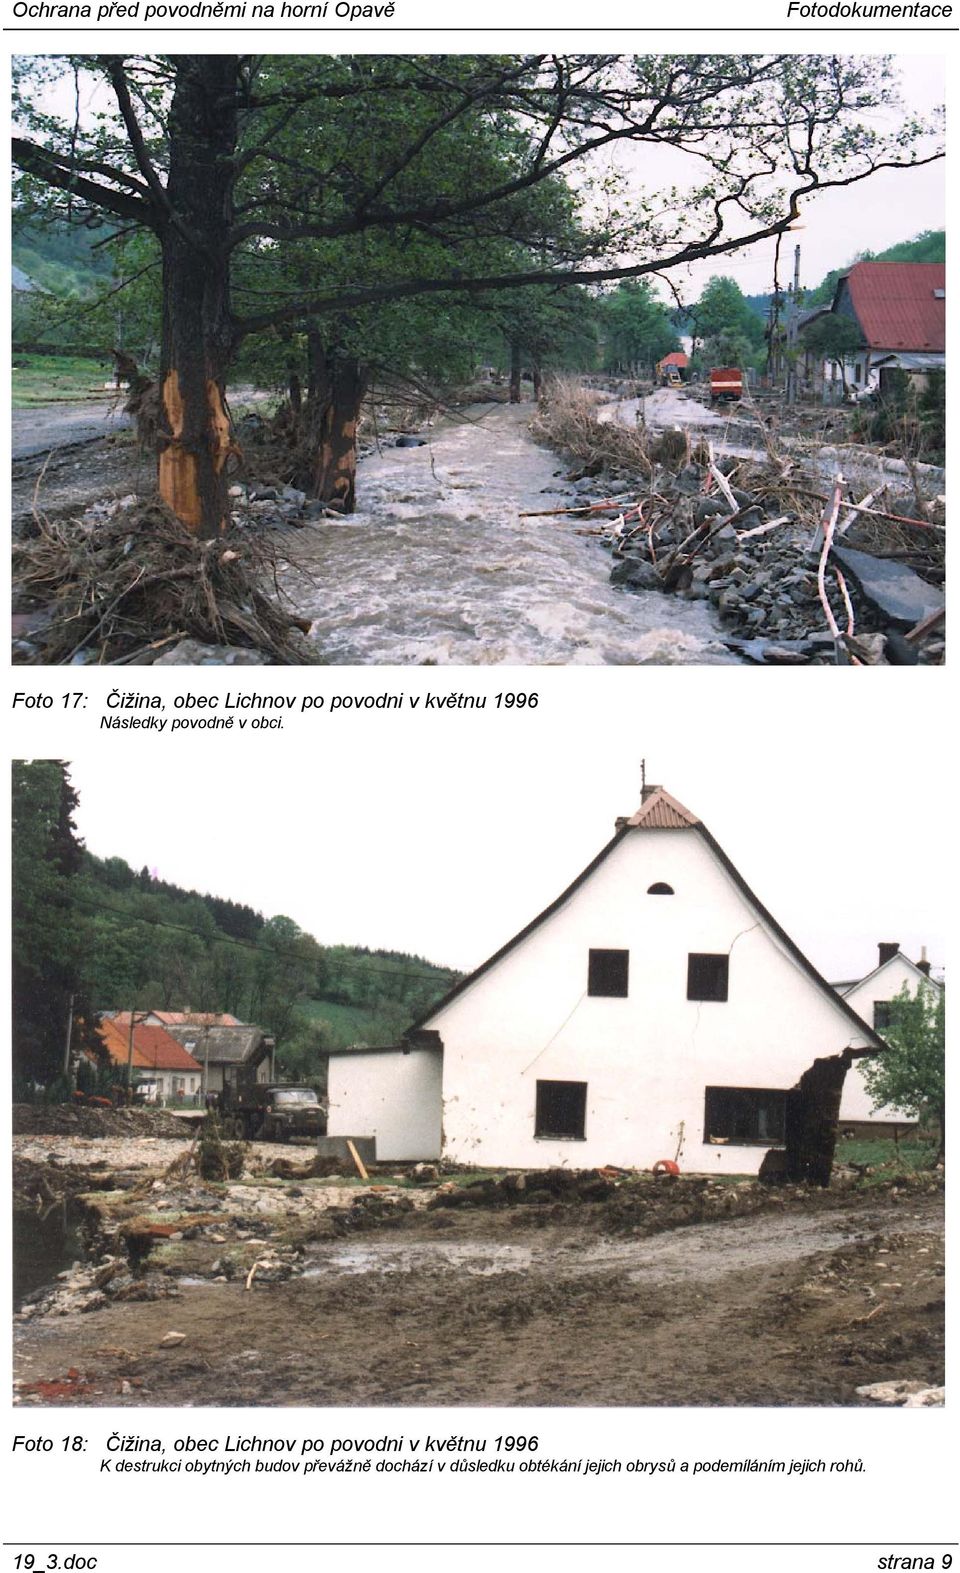 Foto 18: Čižina, obec Lichnov po povodni v květnu 1996 K